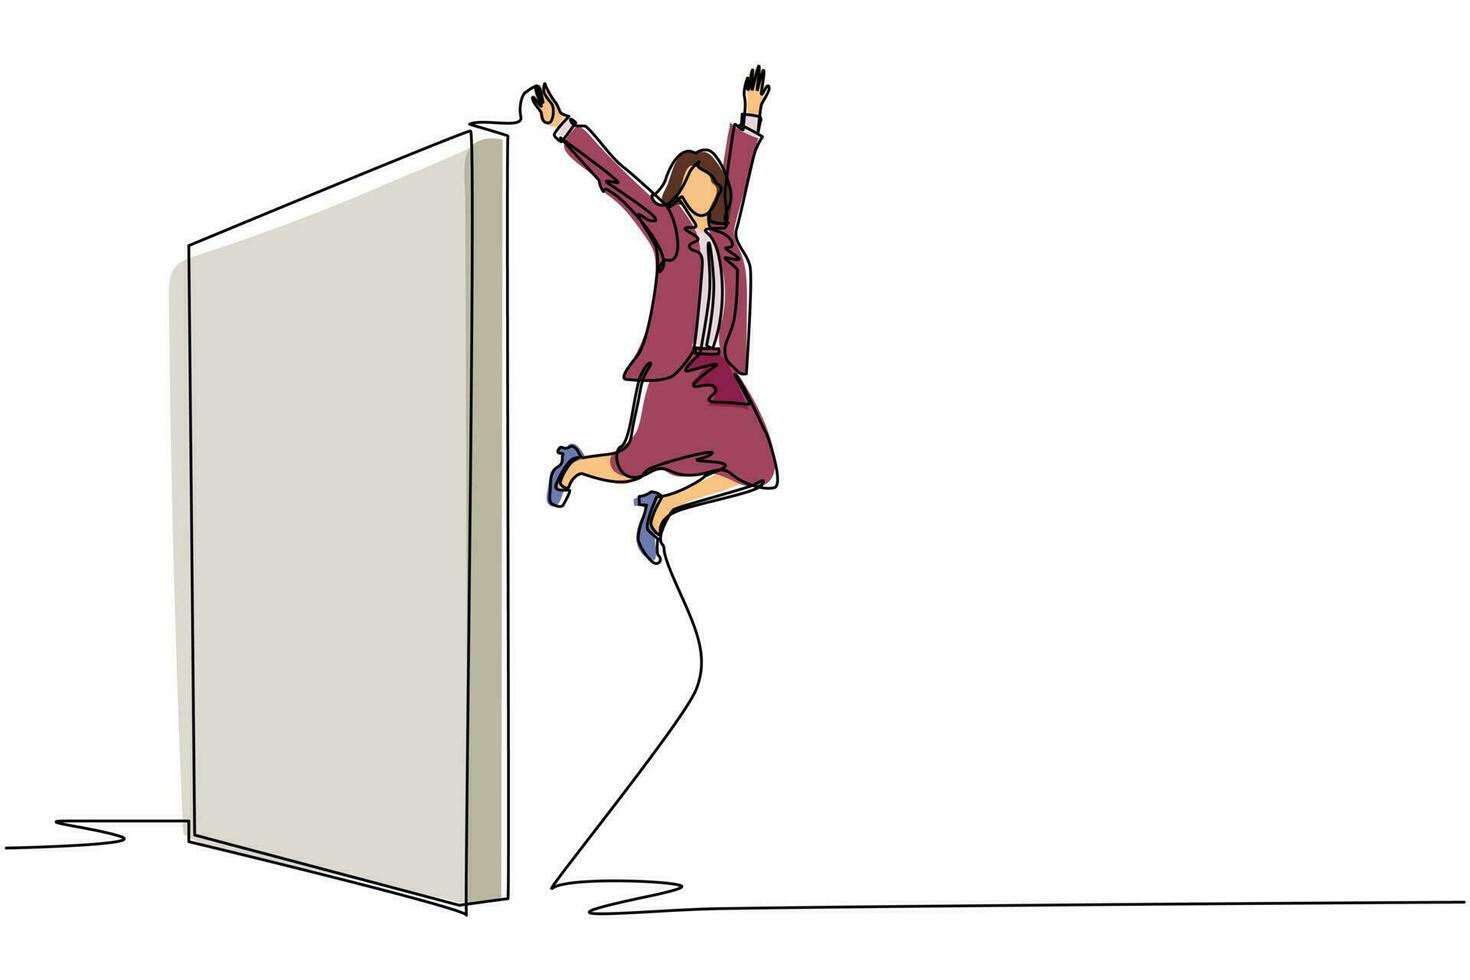 durchgehende einstrichzeichnung geschäftsfrau schaffte es, über die mauer zu springen. Frau springt über die Mauer, außerhalb der Komfortzone, um neue Erfahrungen zu sammeln, Spaß zu haben und aufgeregt zu sein. einzeiliges zeichnen design vektorgrafik vektor